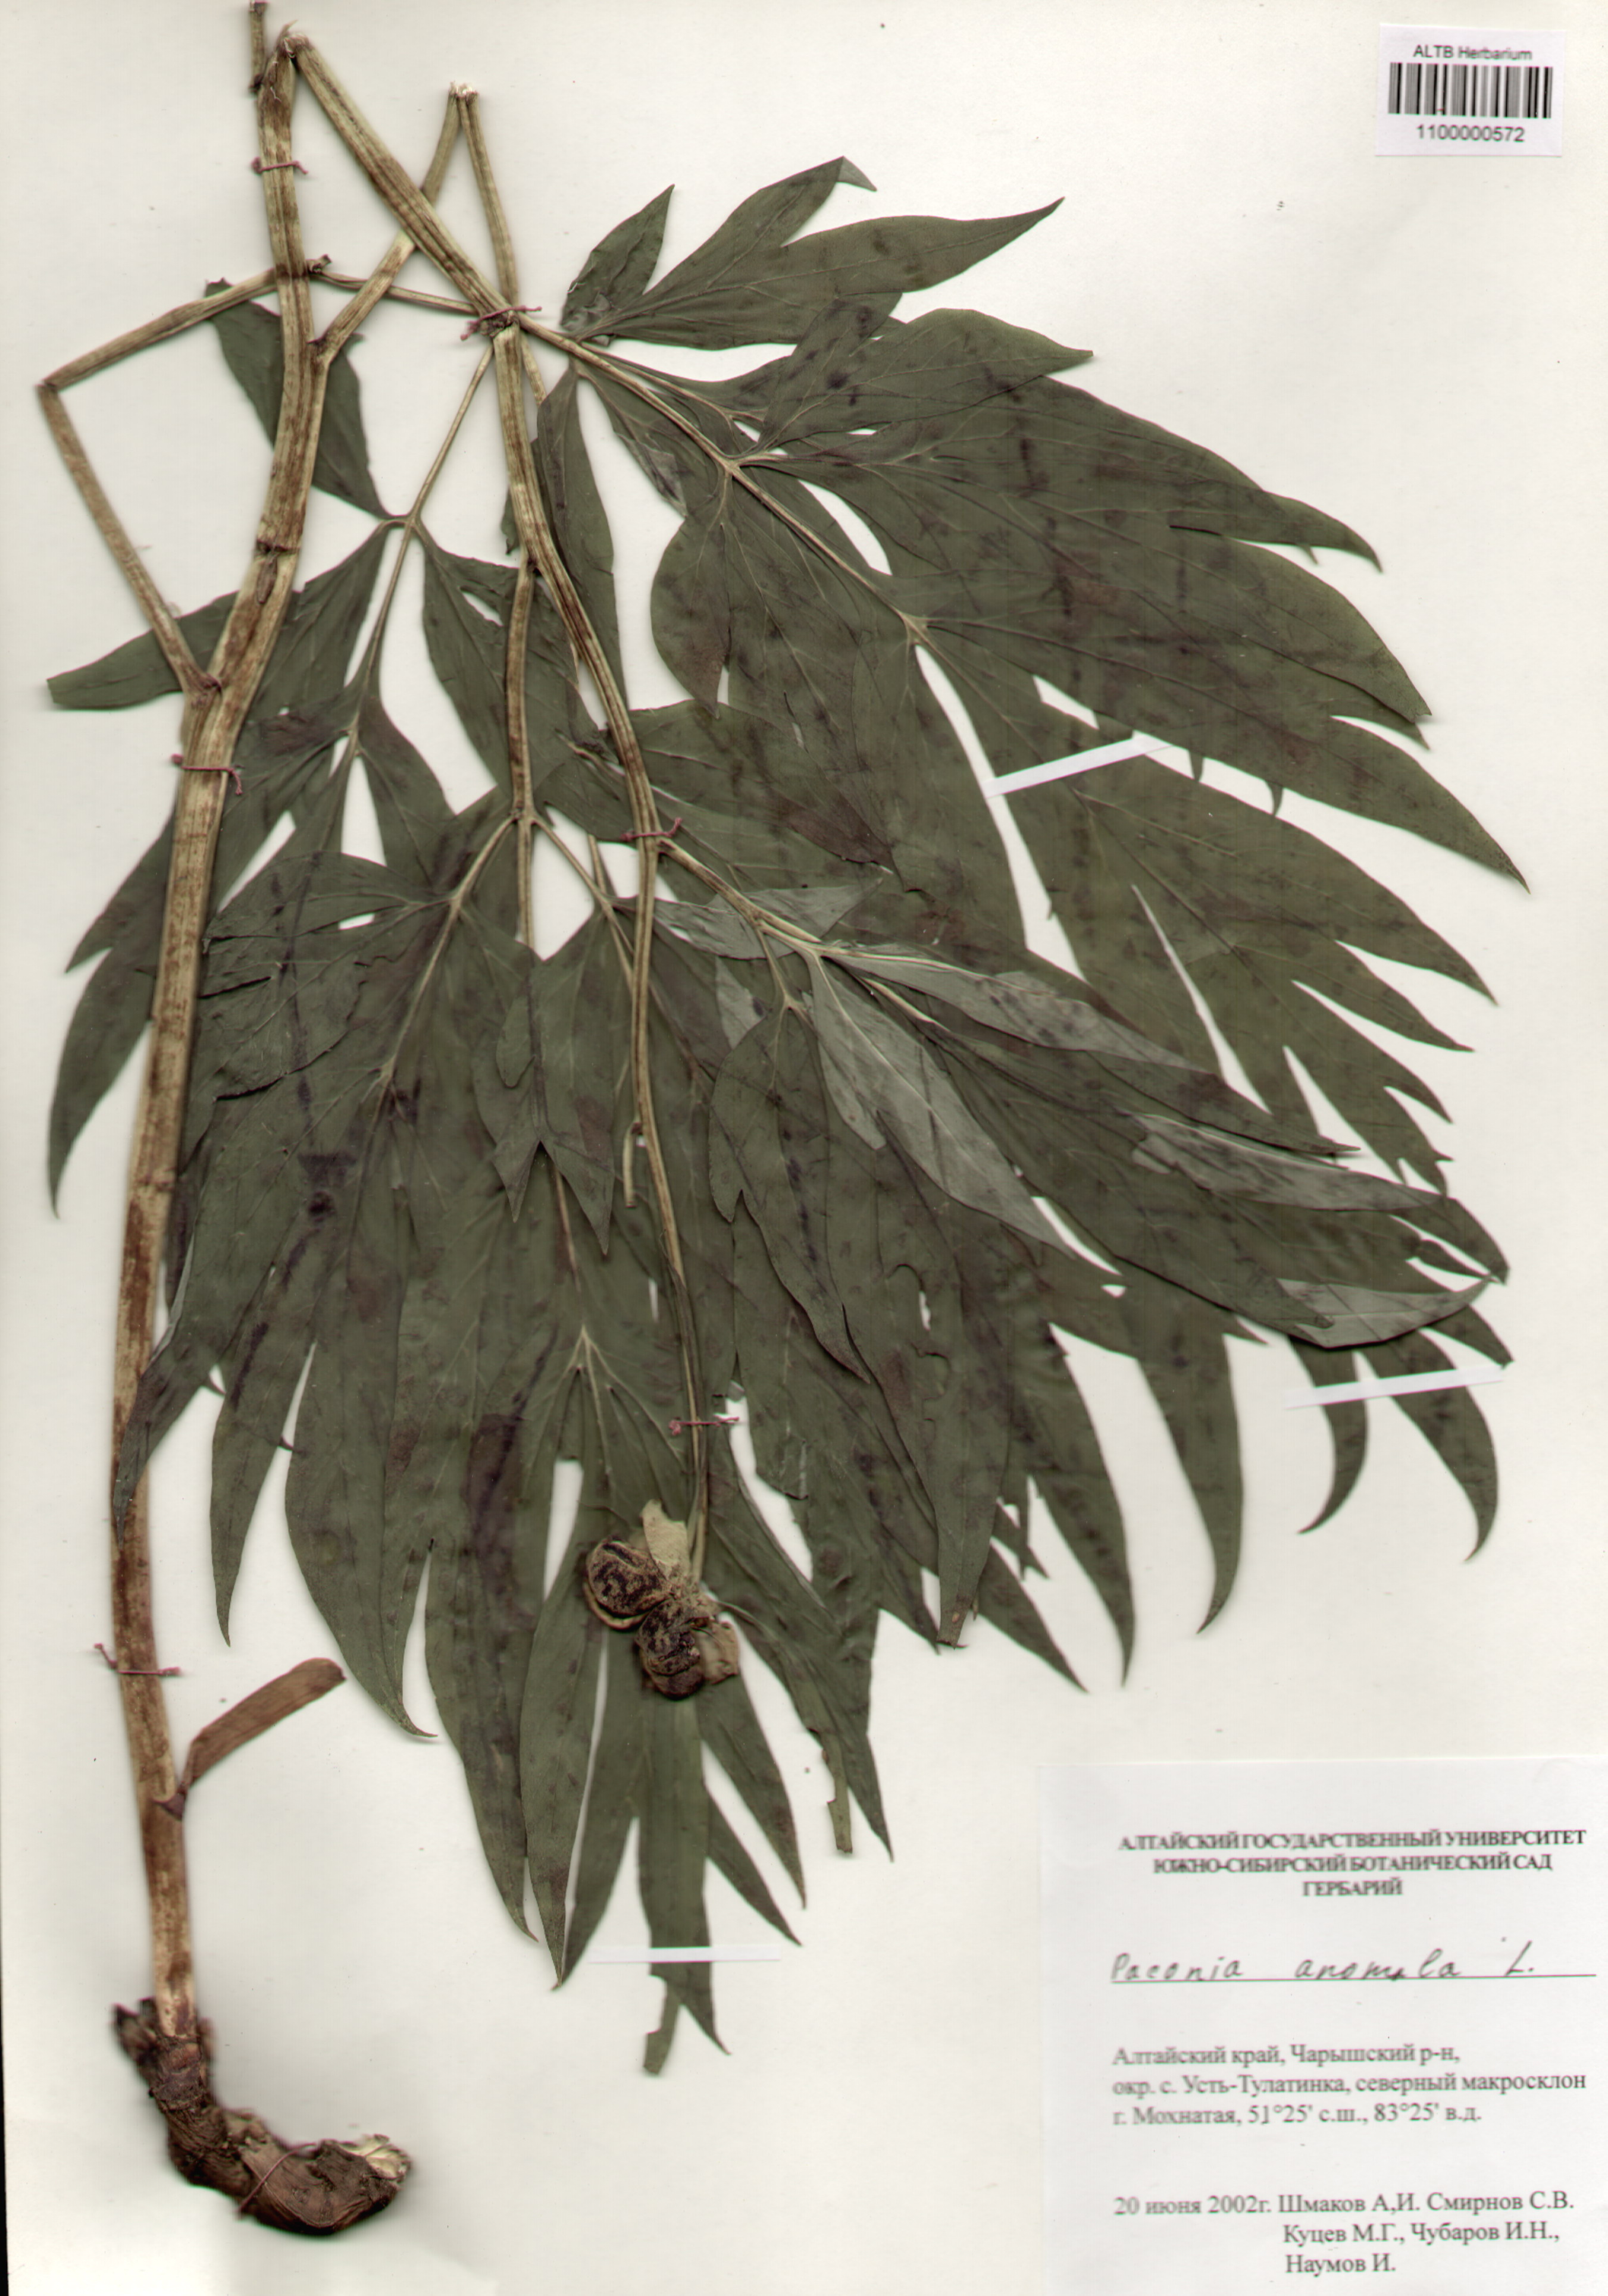 Paeoniaceae,Paeonia anomala L.